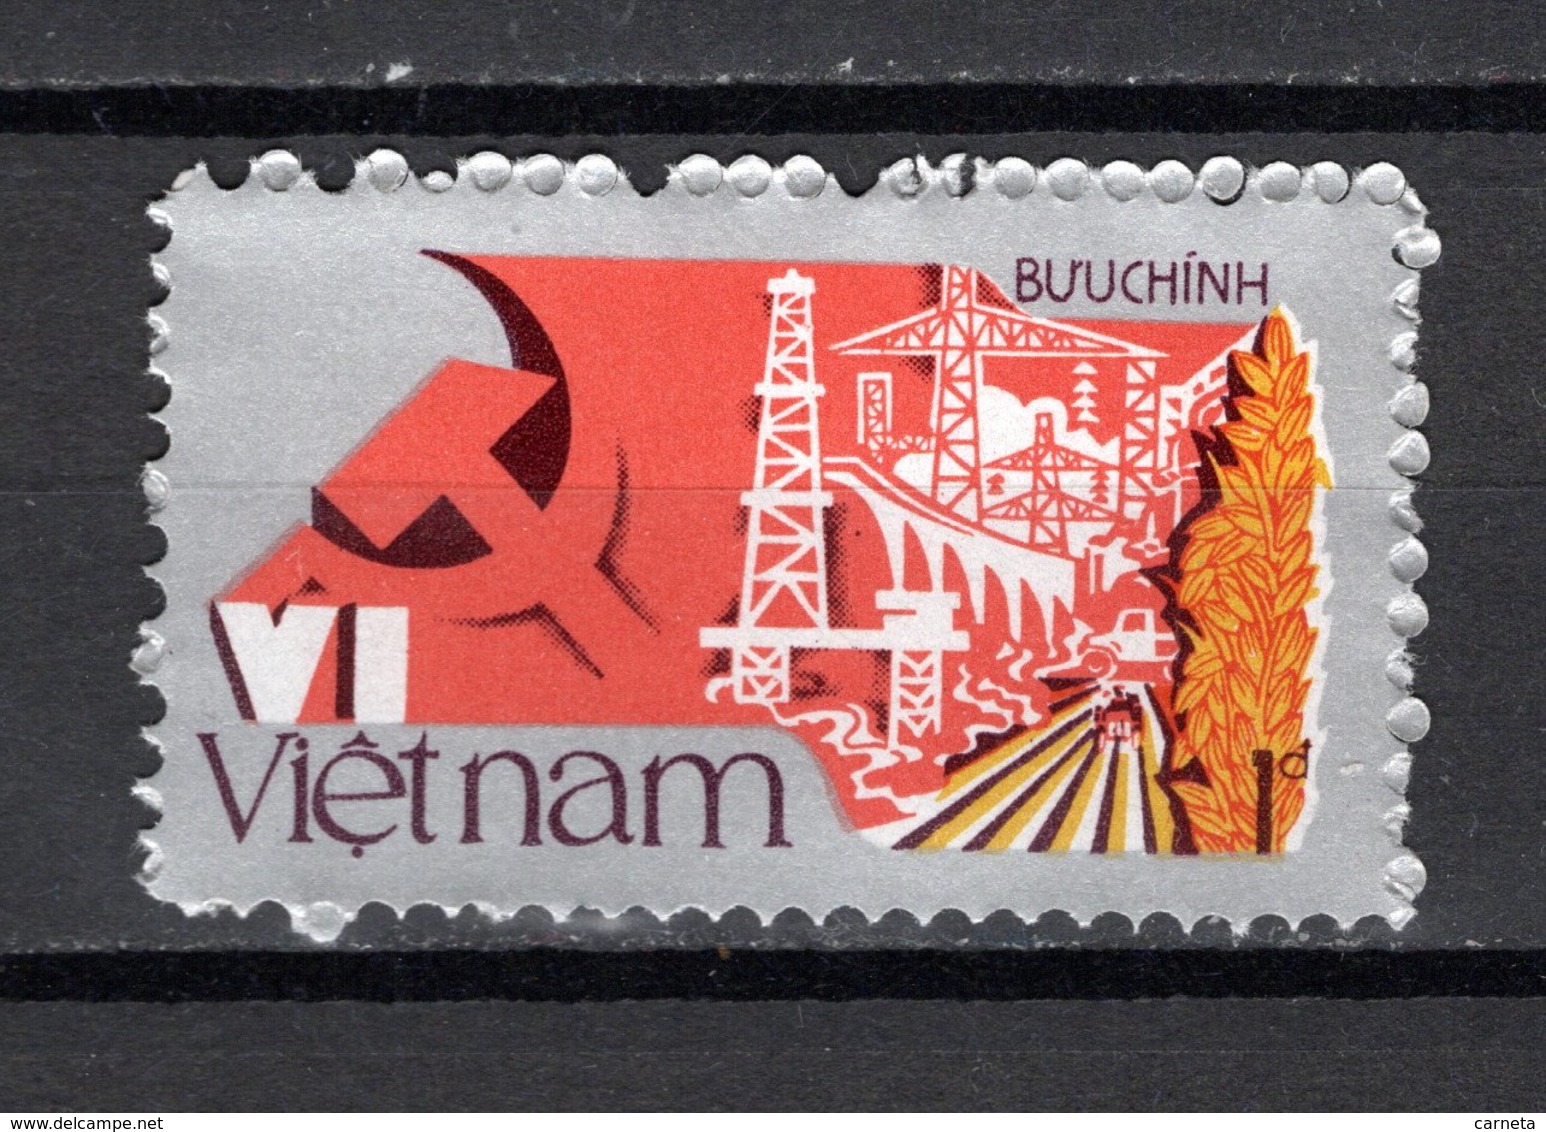 VIETNAM REPUBLIQUE   N° 746     NEUF SANS CHARNIERE COTE 0.65€    PARTI COMMUNISTE - Viêt-Nam